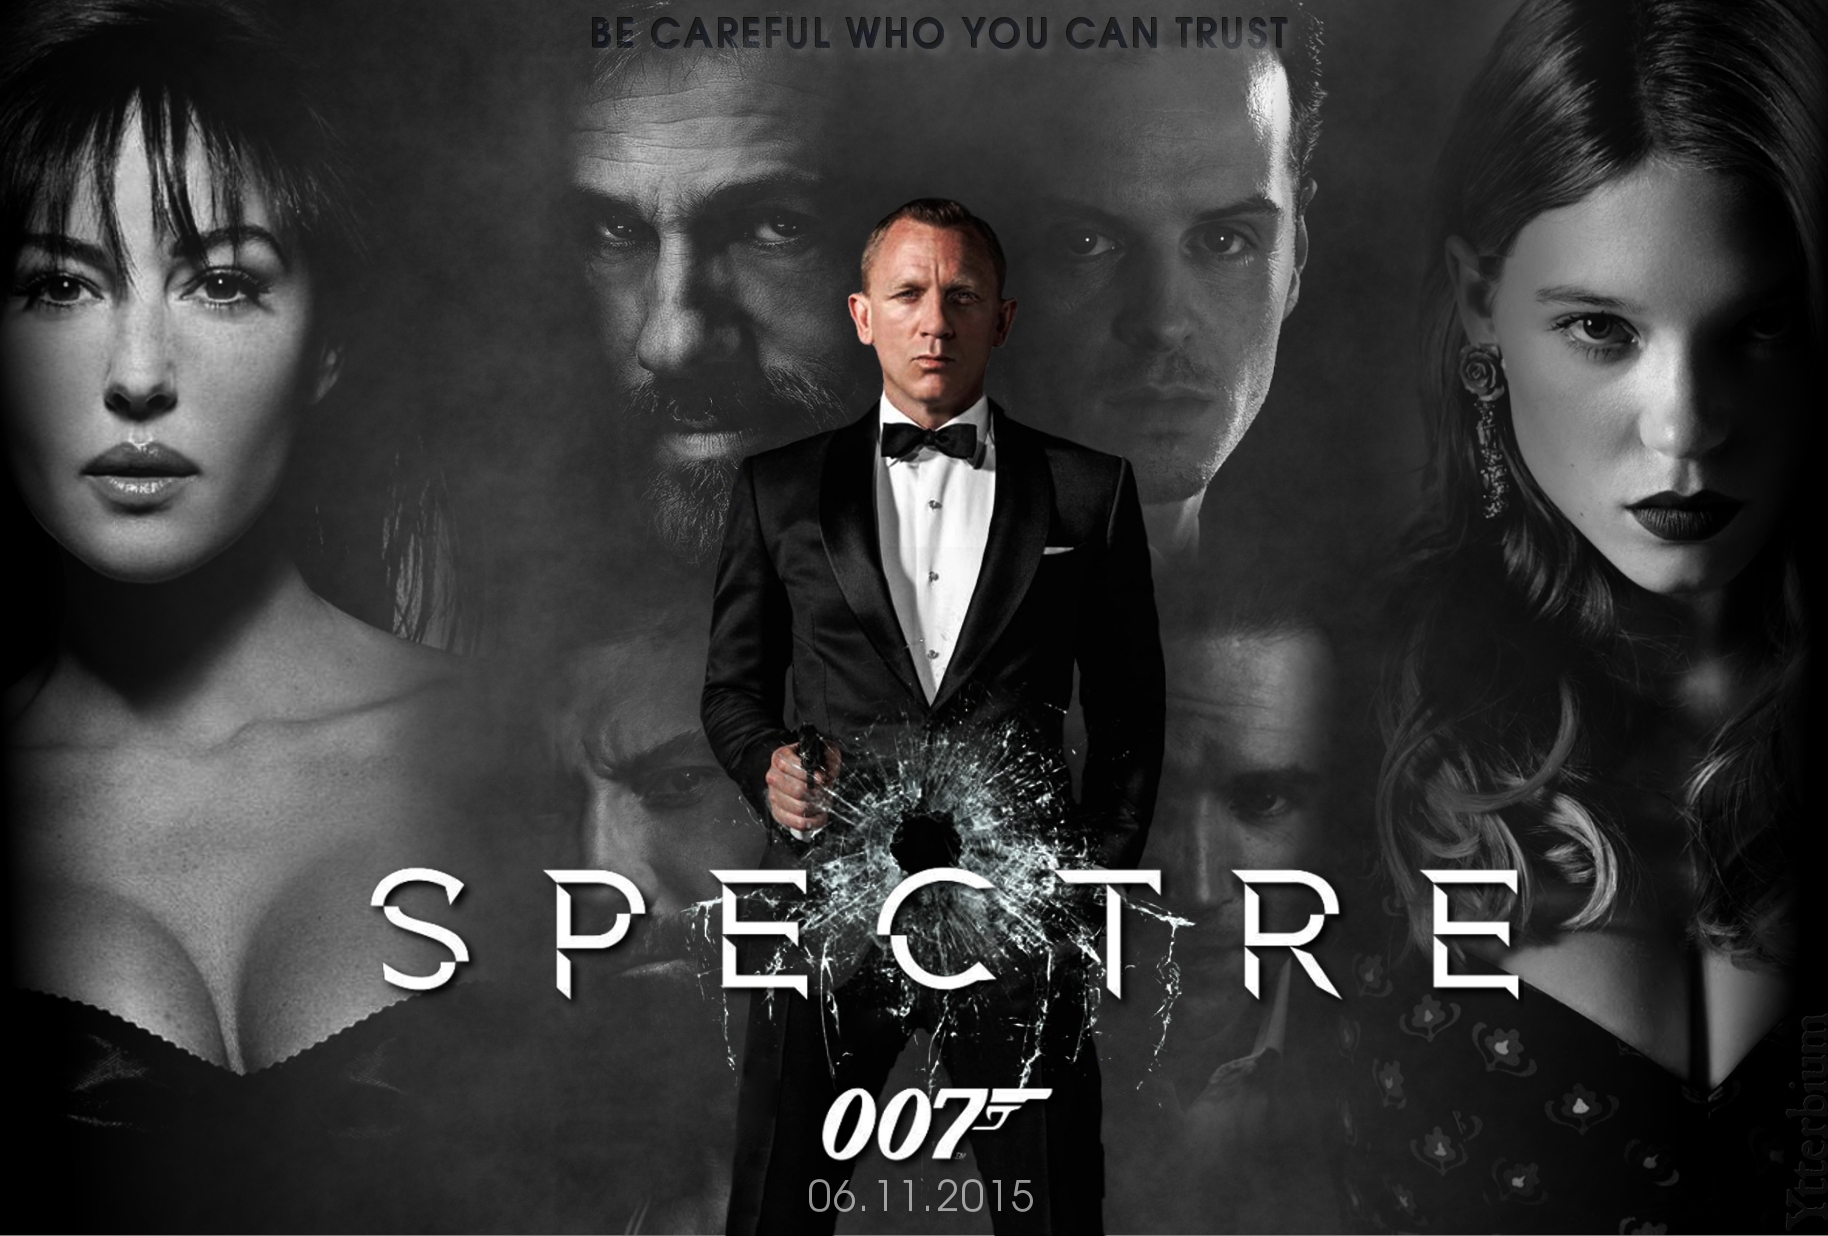 007 spectre spectre logo